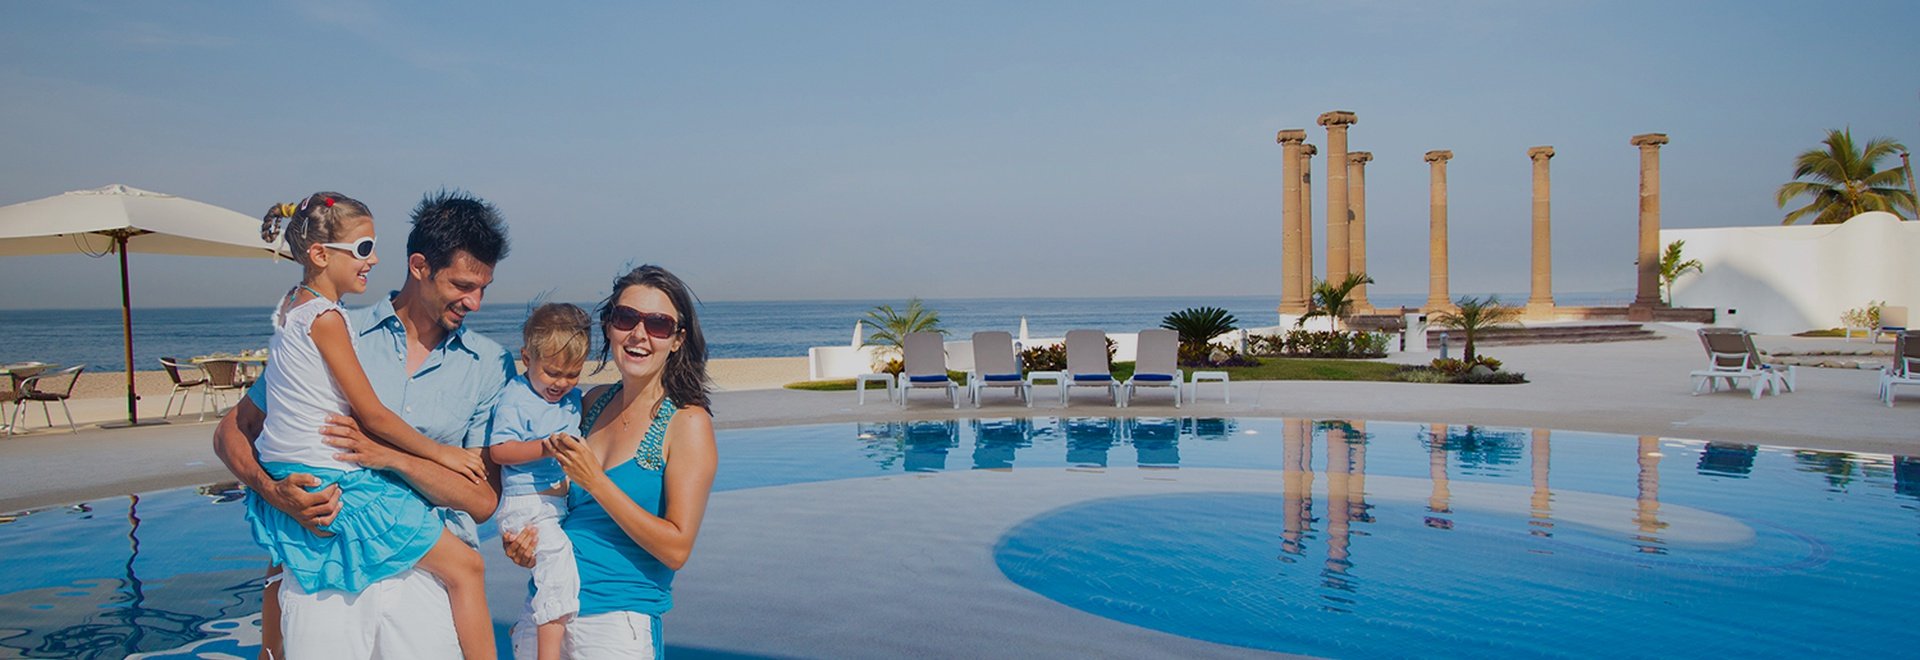 Krystal Puerto Vallarta Hotel - The best Sunsets at Puerto Vallarta